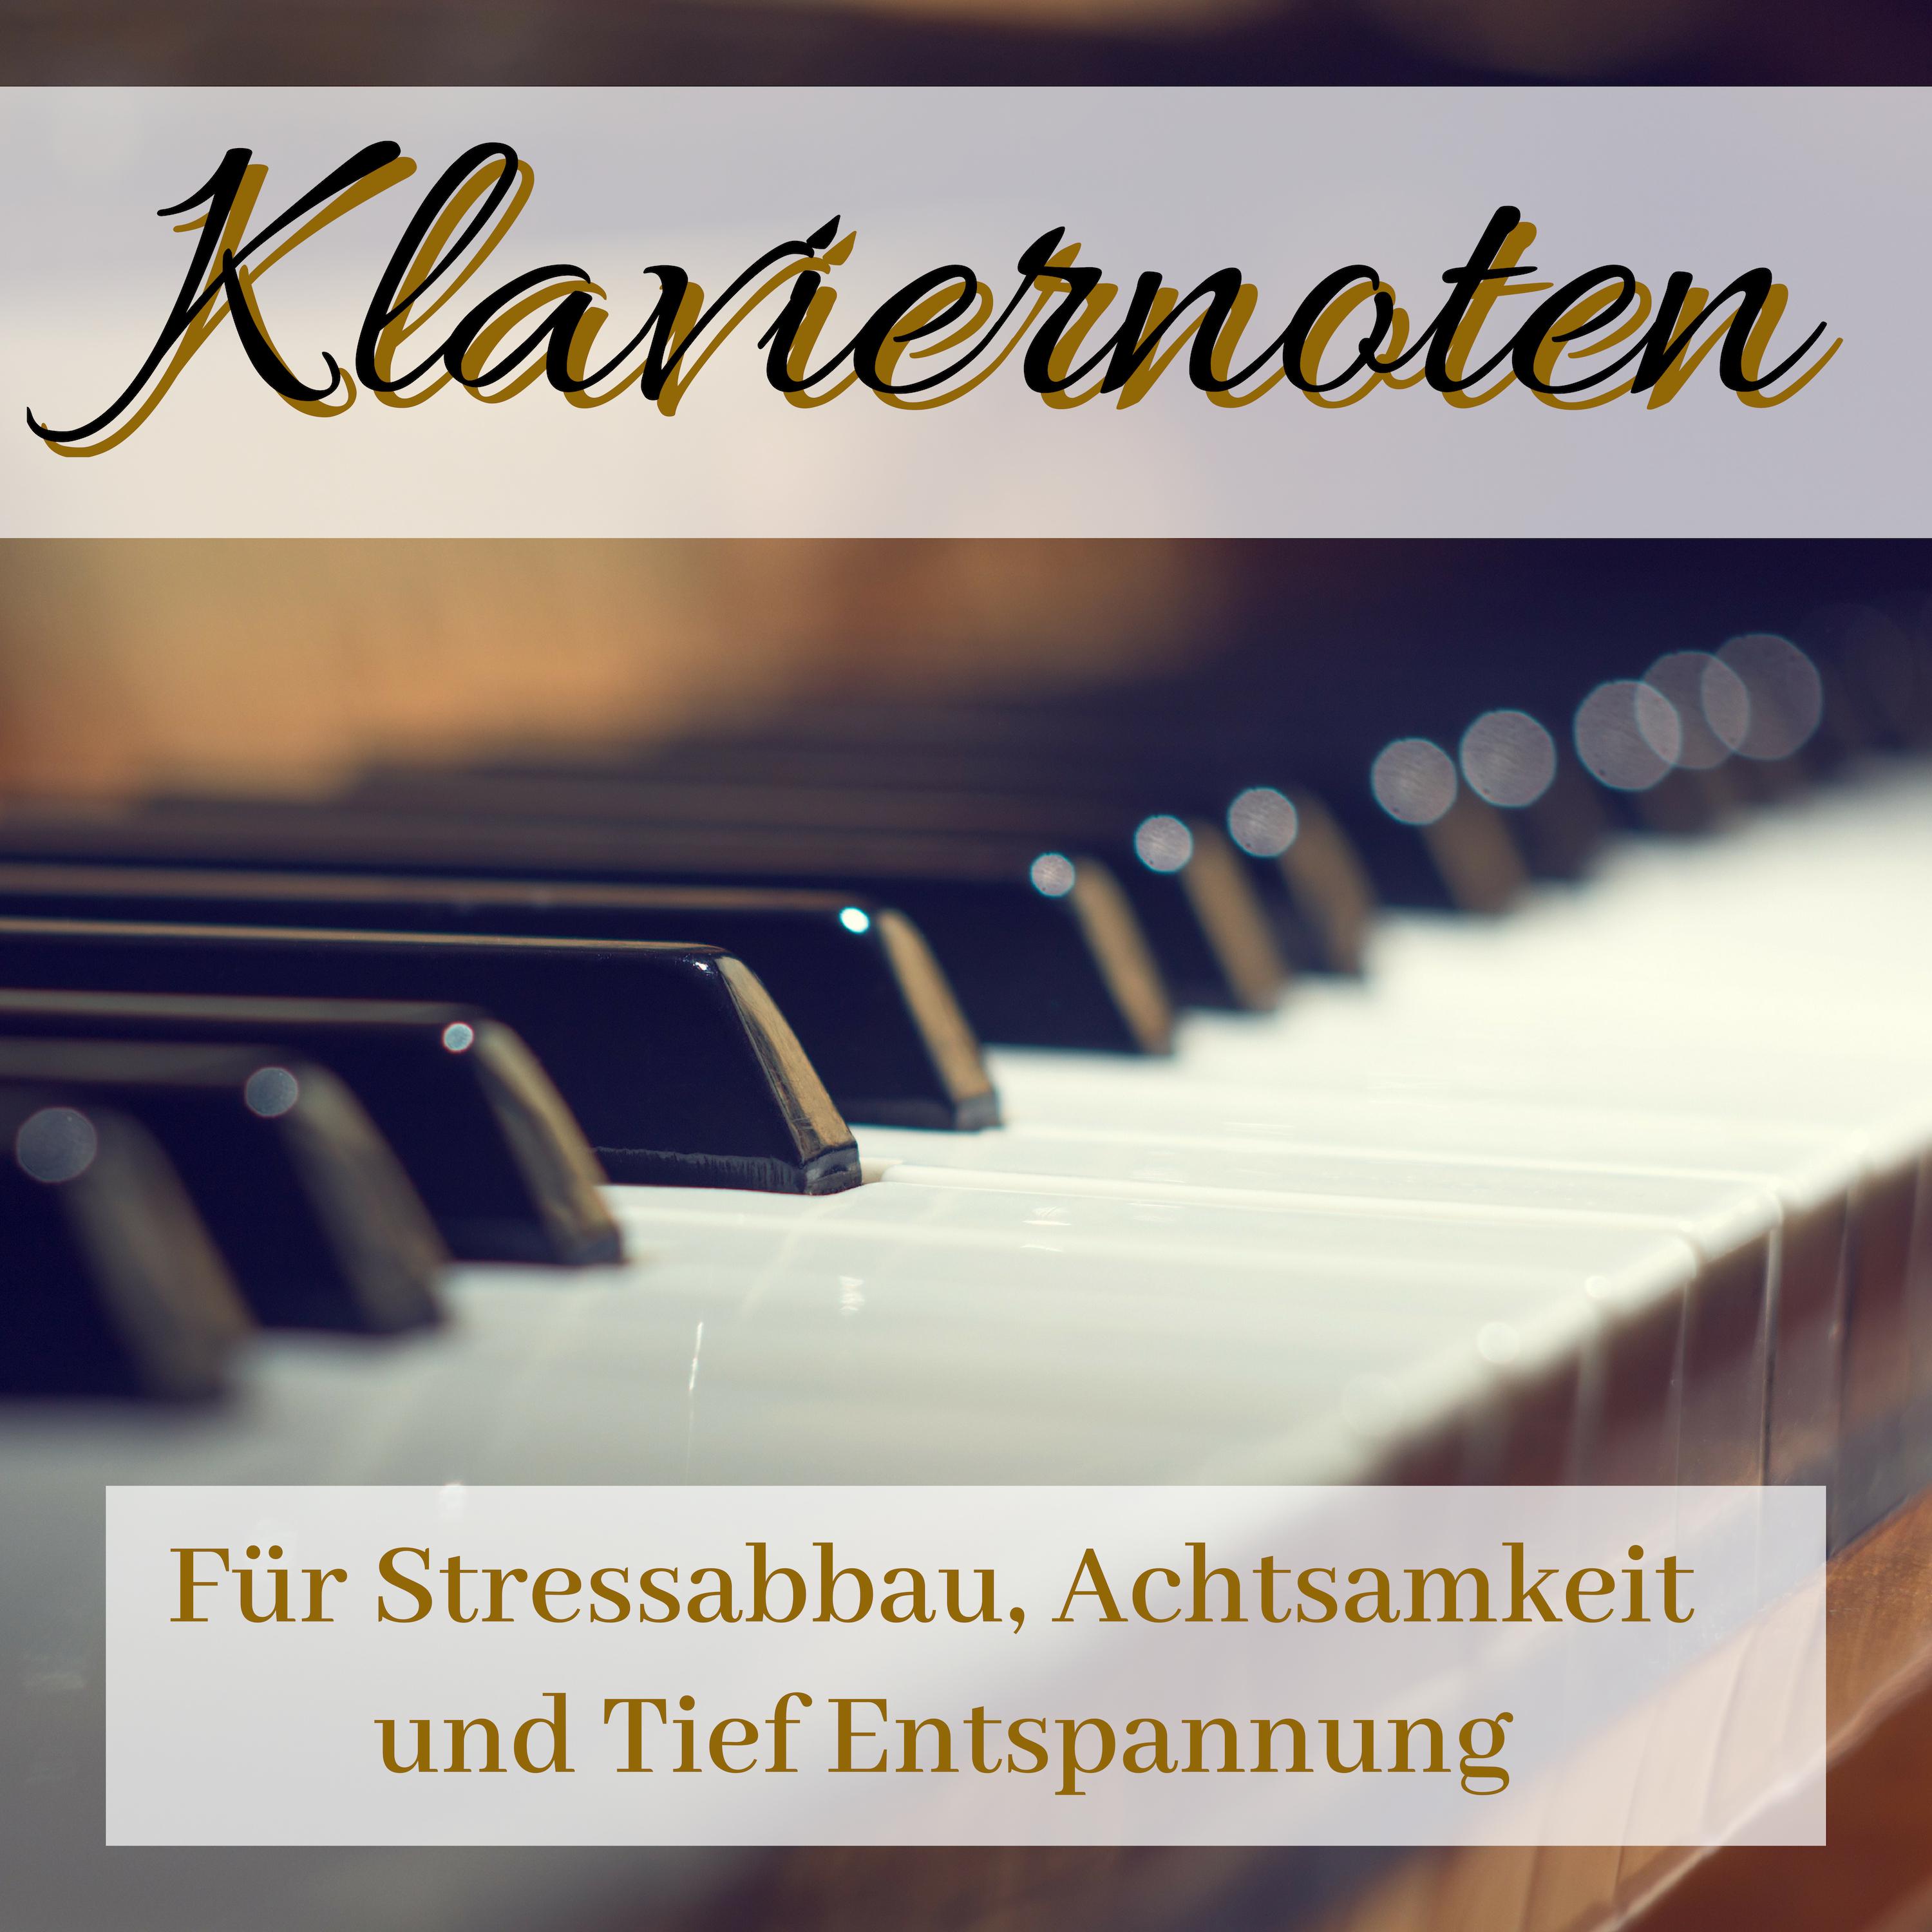 Klaviernoten  Sch ne Klaviermusik fü r Stressabbau, Achtsamkeit und Tief Entspannung